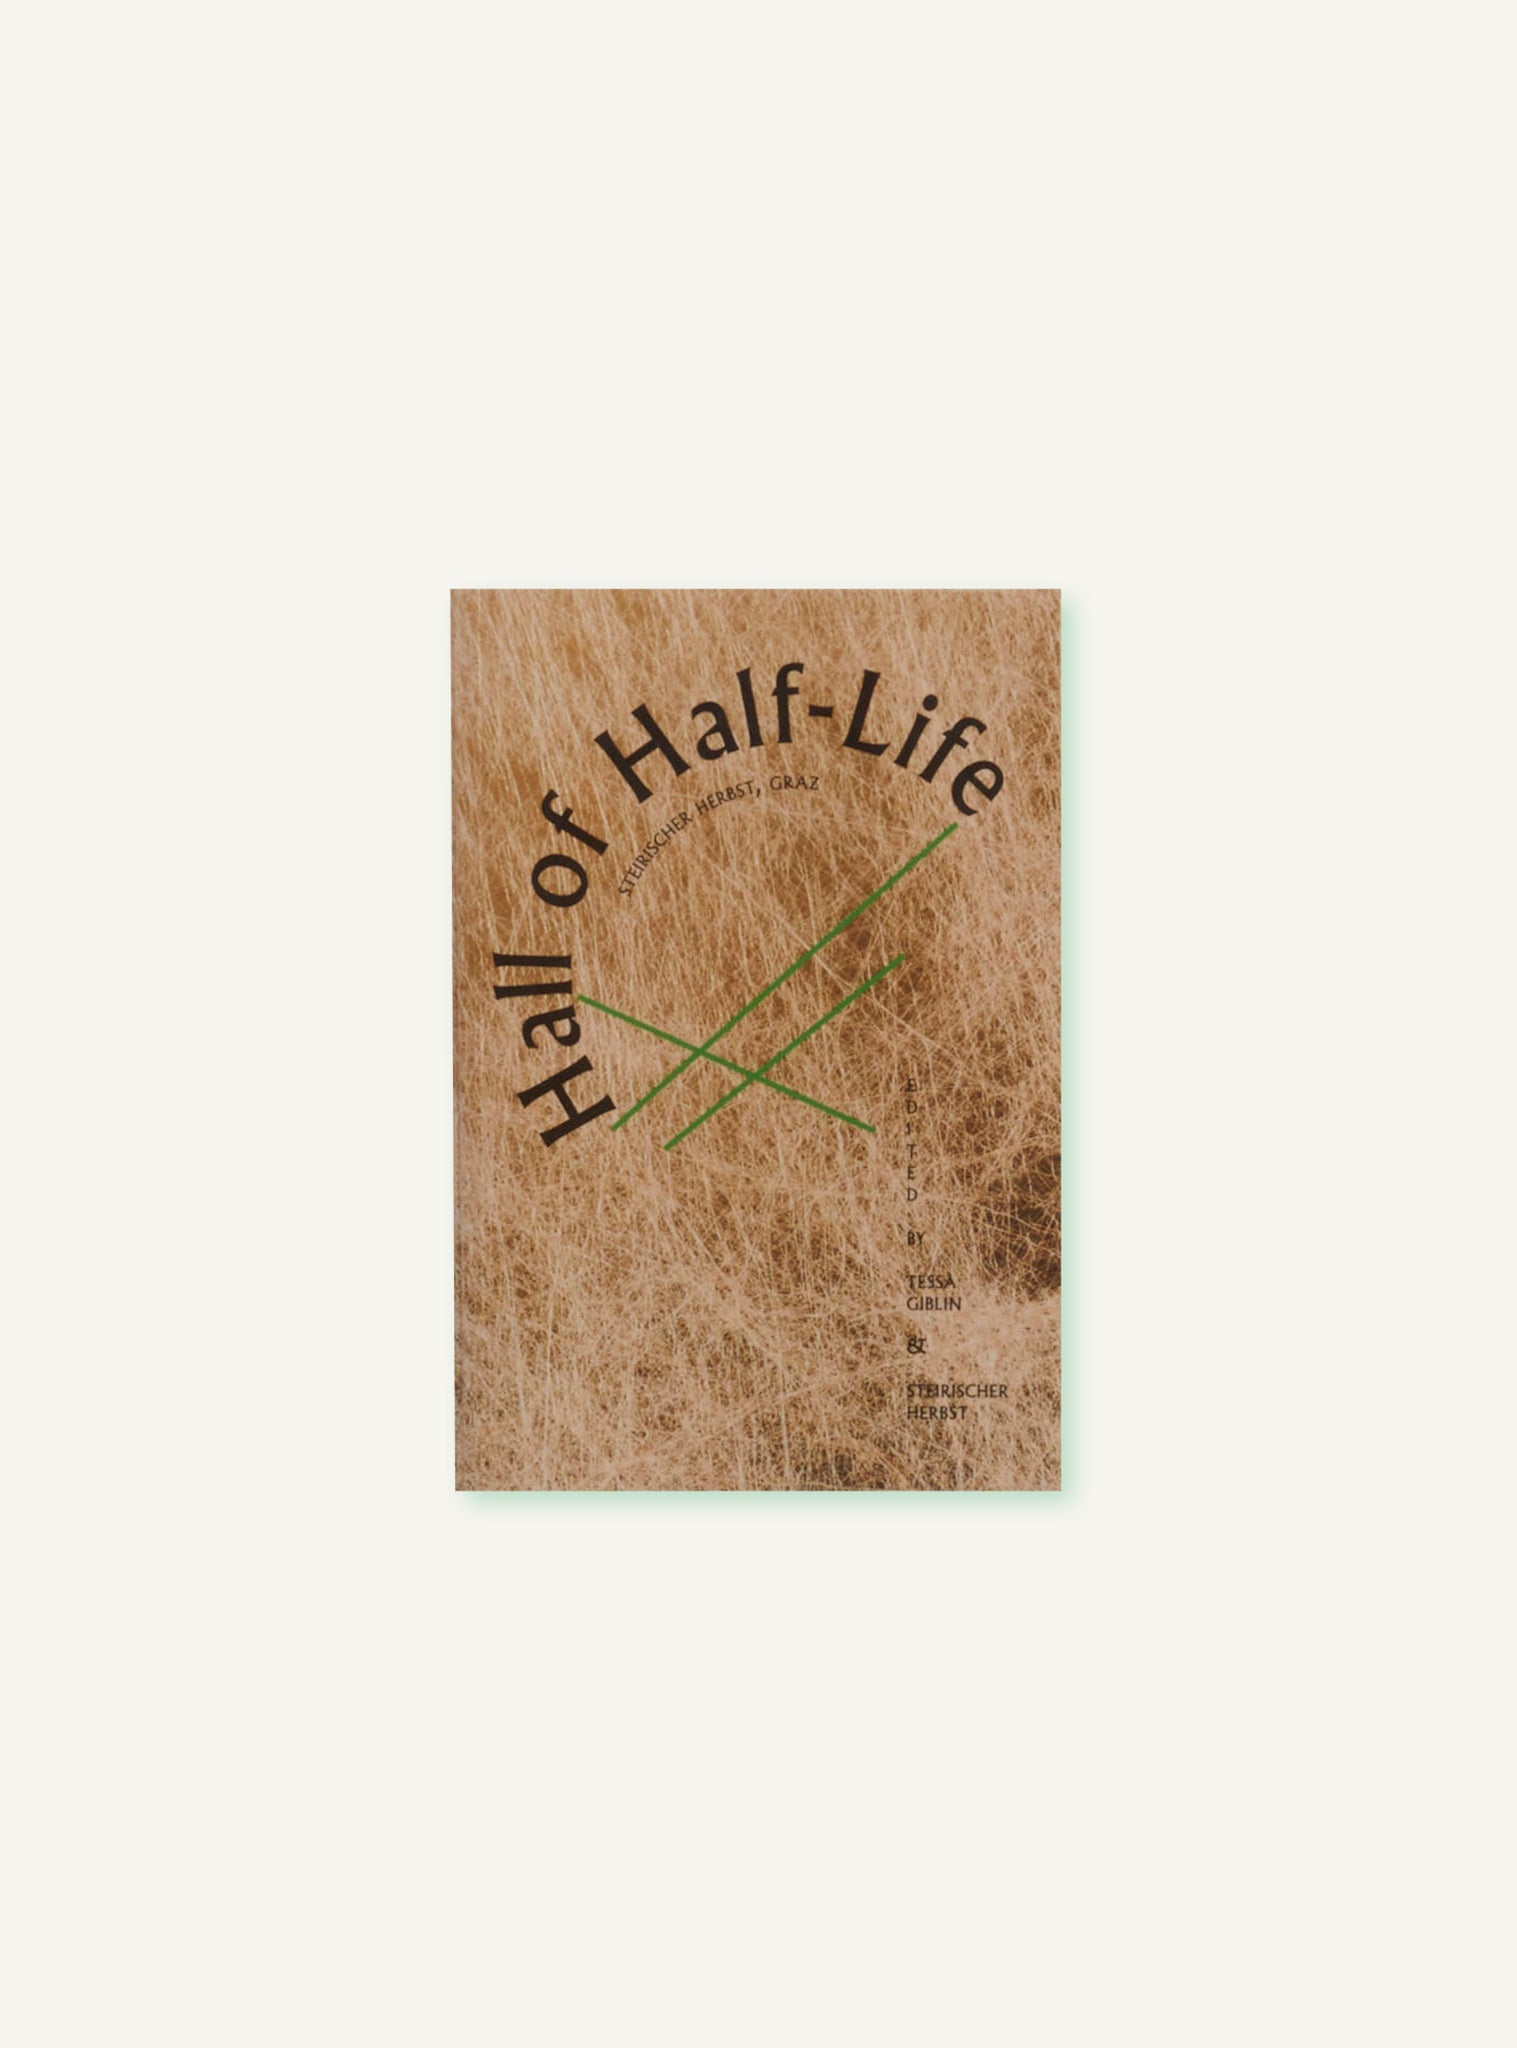 Hall of Half-Life By Tessa Gibblin & Steirischer Herbst